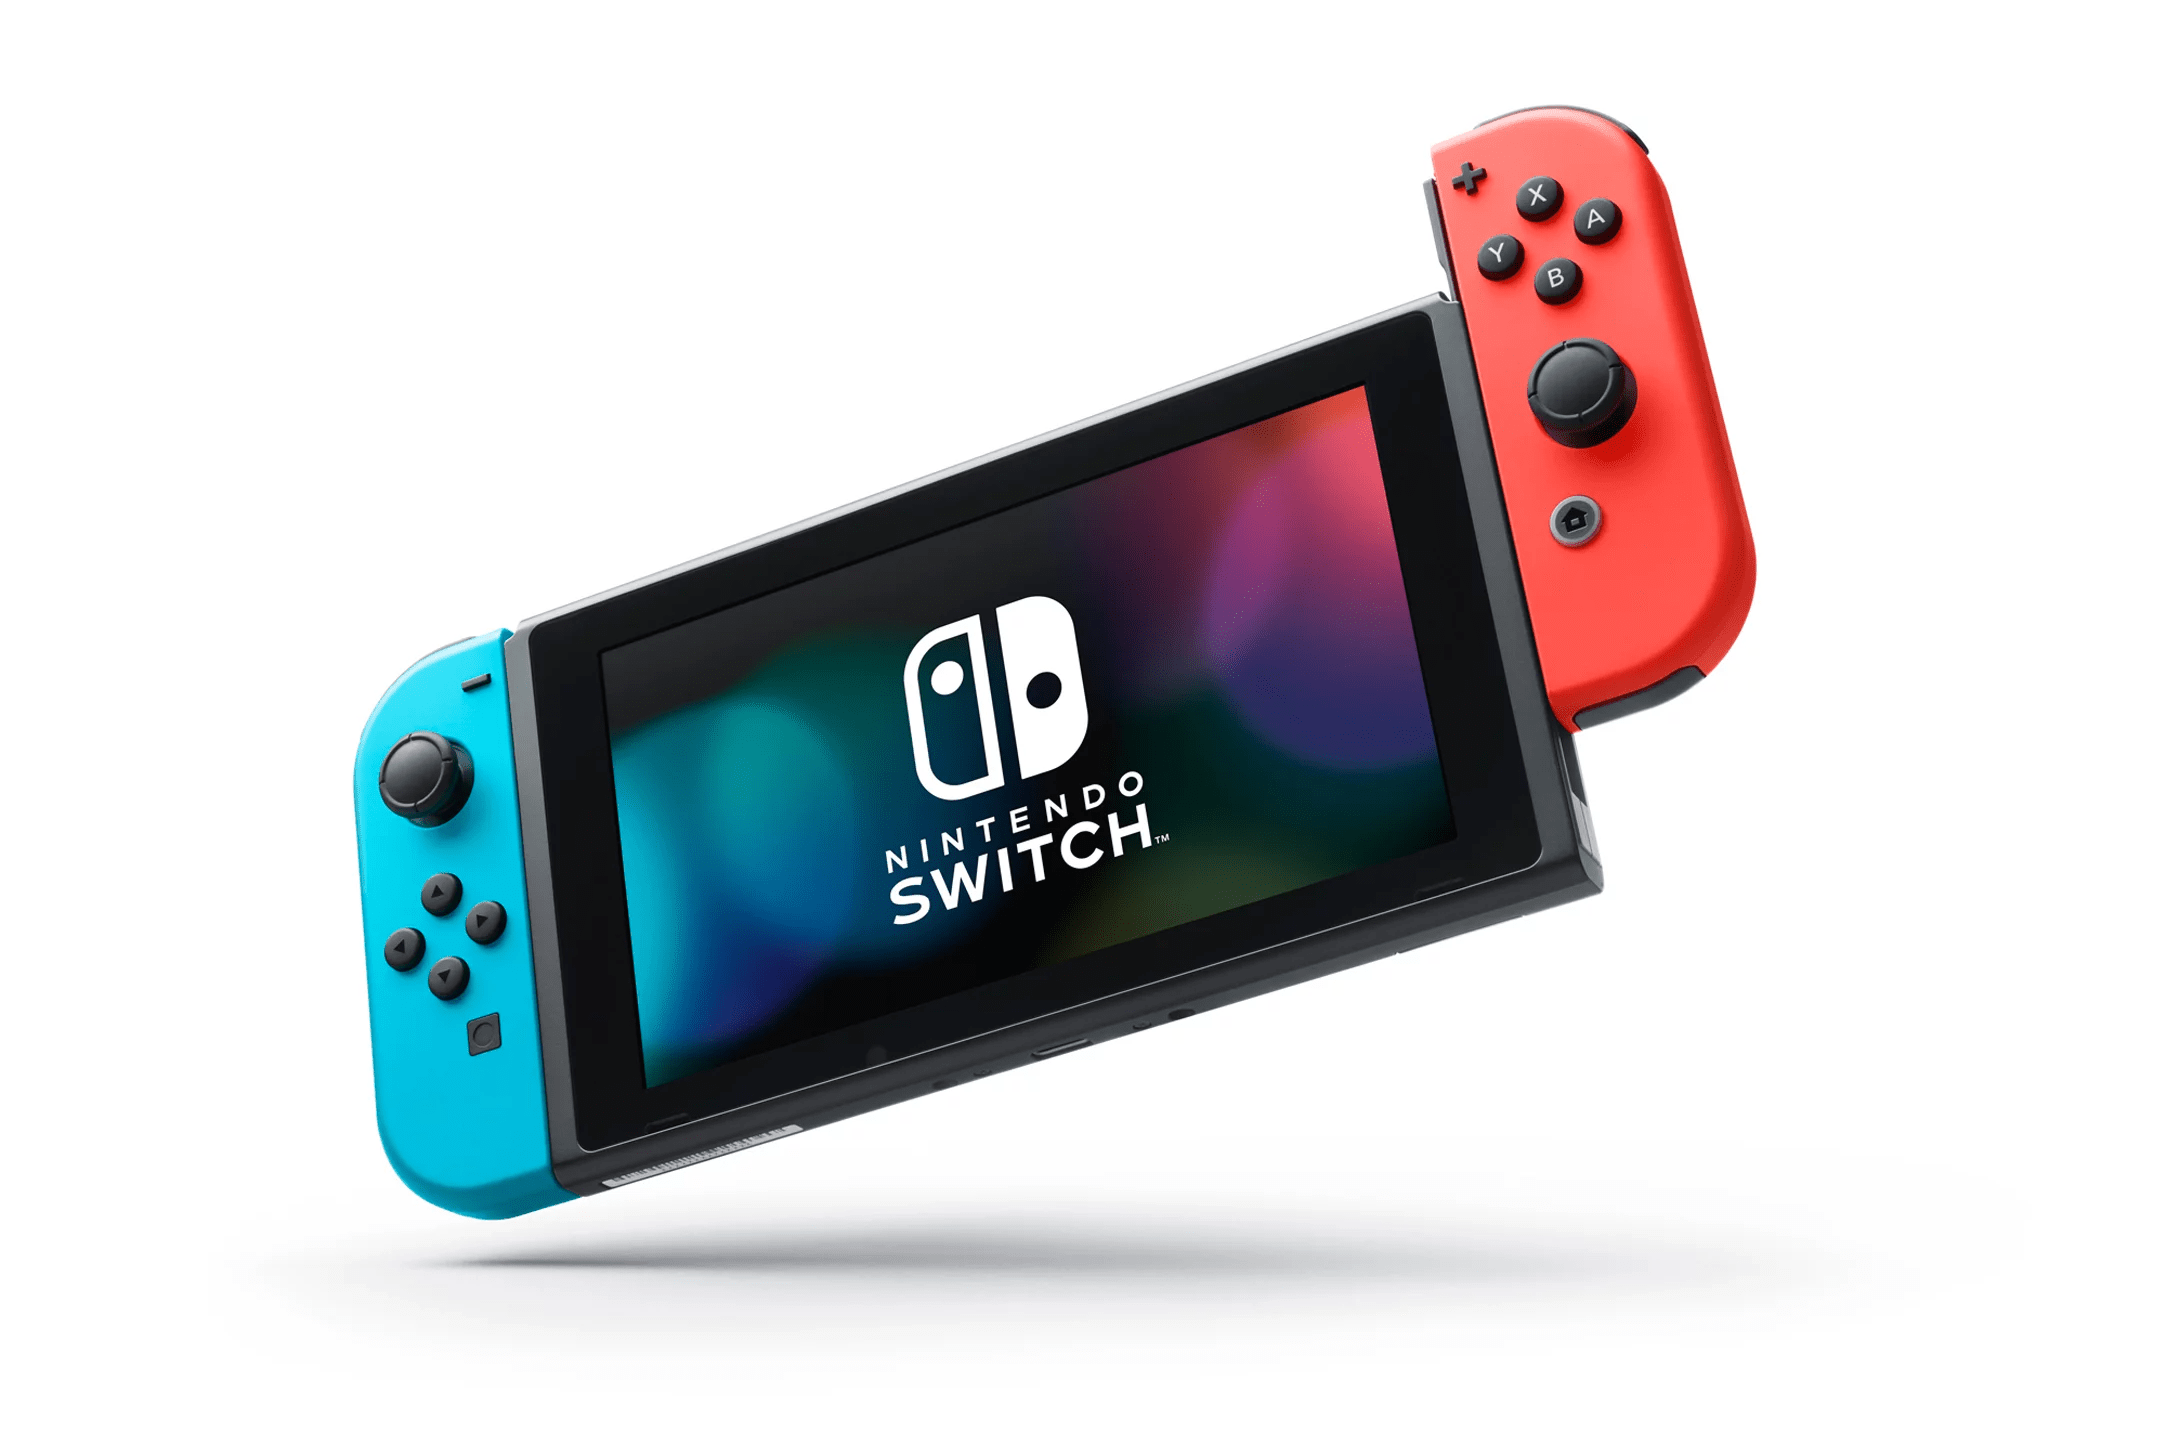 С 9 ноября в Украине начнется официальная продажа консоли Nintendo Switch